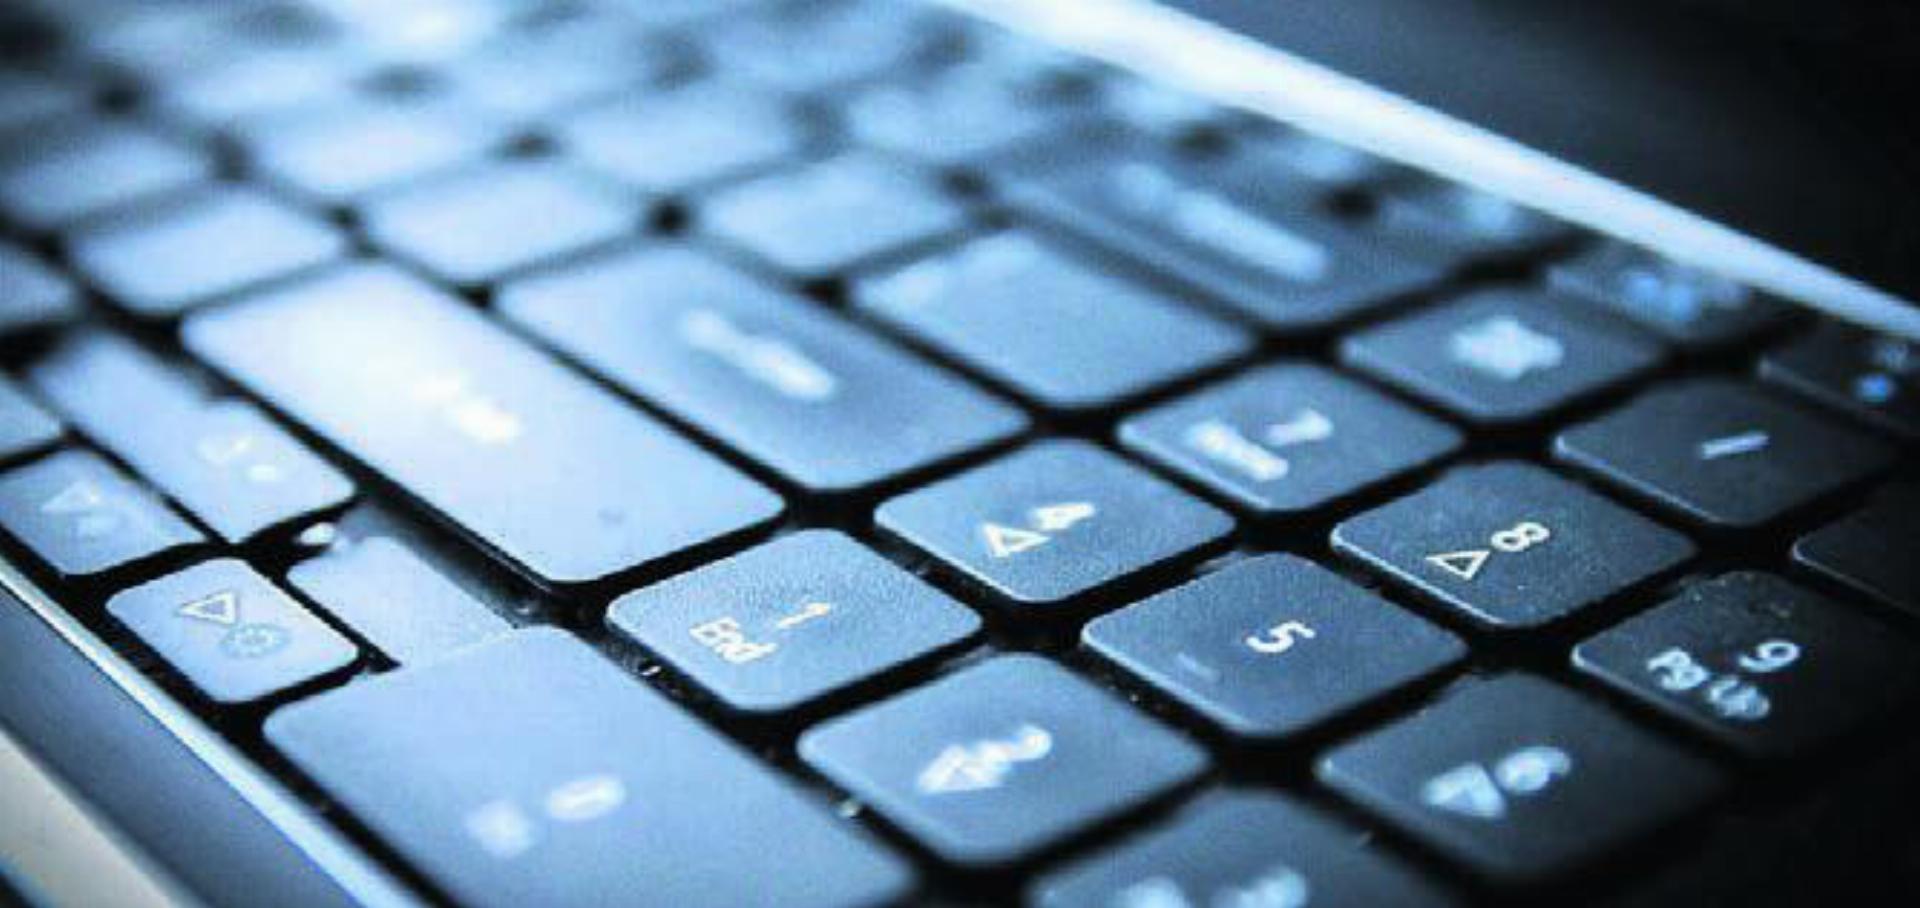 In den Zwischenräumen von Tastaturen befindet sich oft schwer zugänglicher Schmutz. Bild: Pixabay